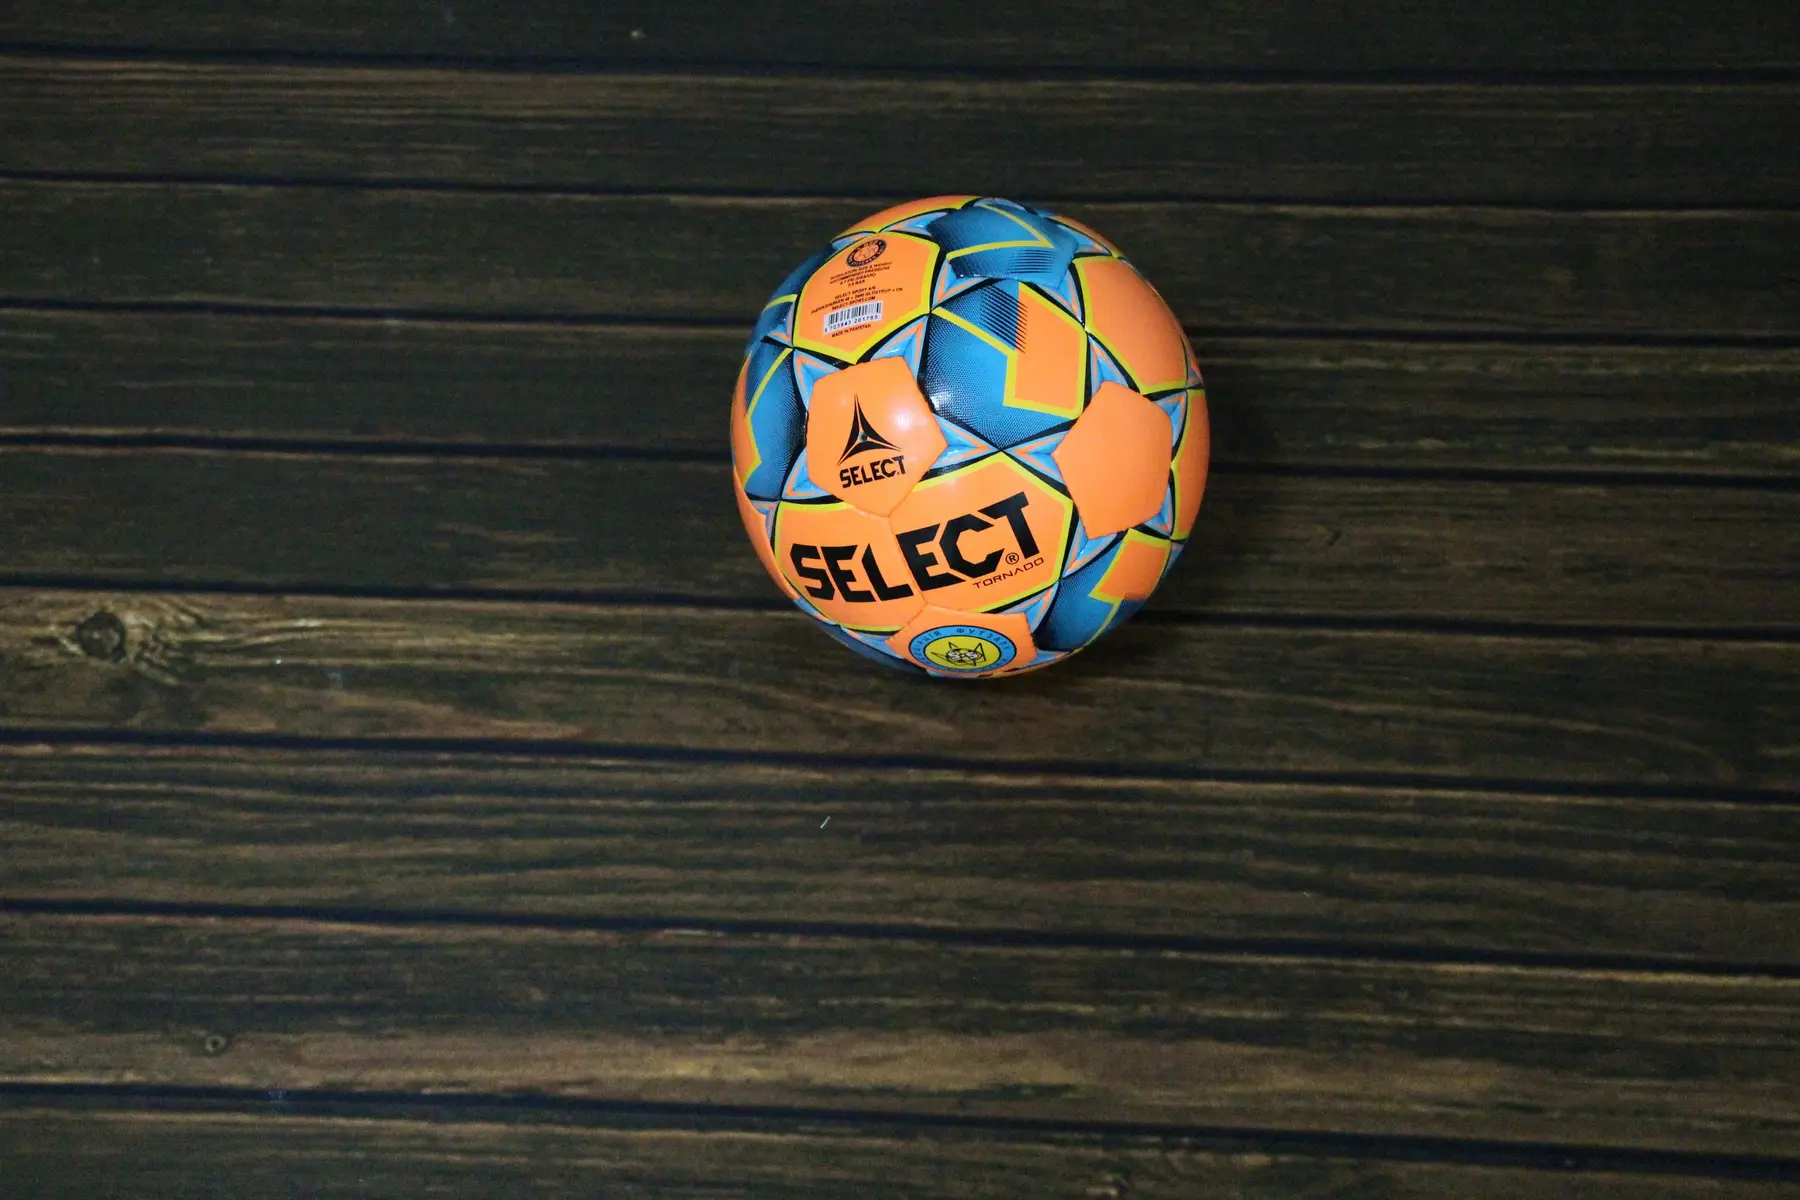 М’яч футзальний SELECT Futsal Tornado (FIFA Quality PRO)  помаран/синій фото товару